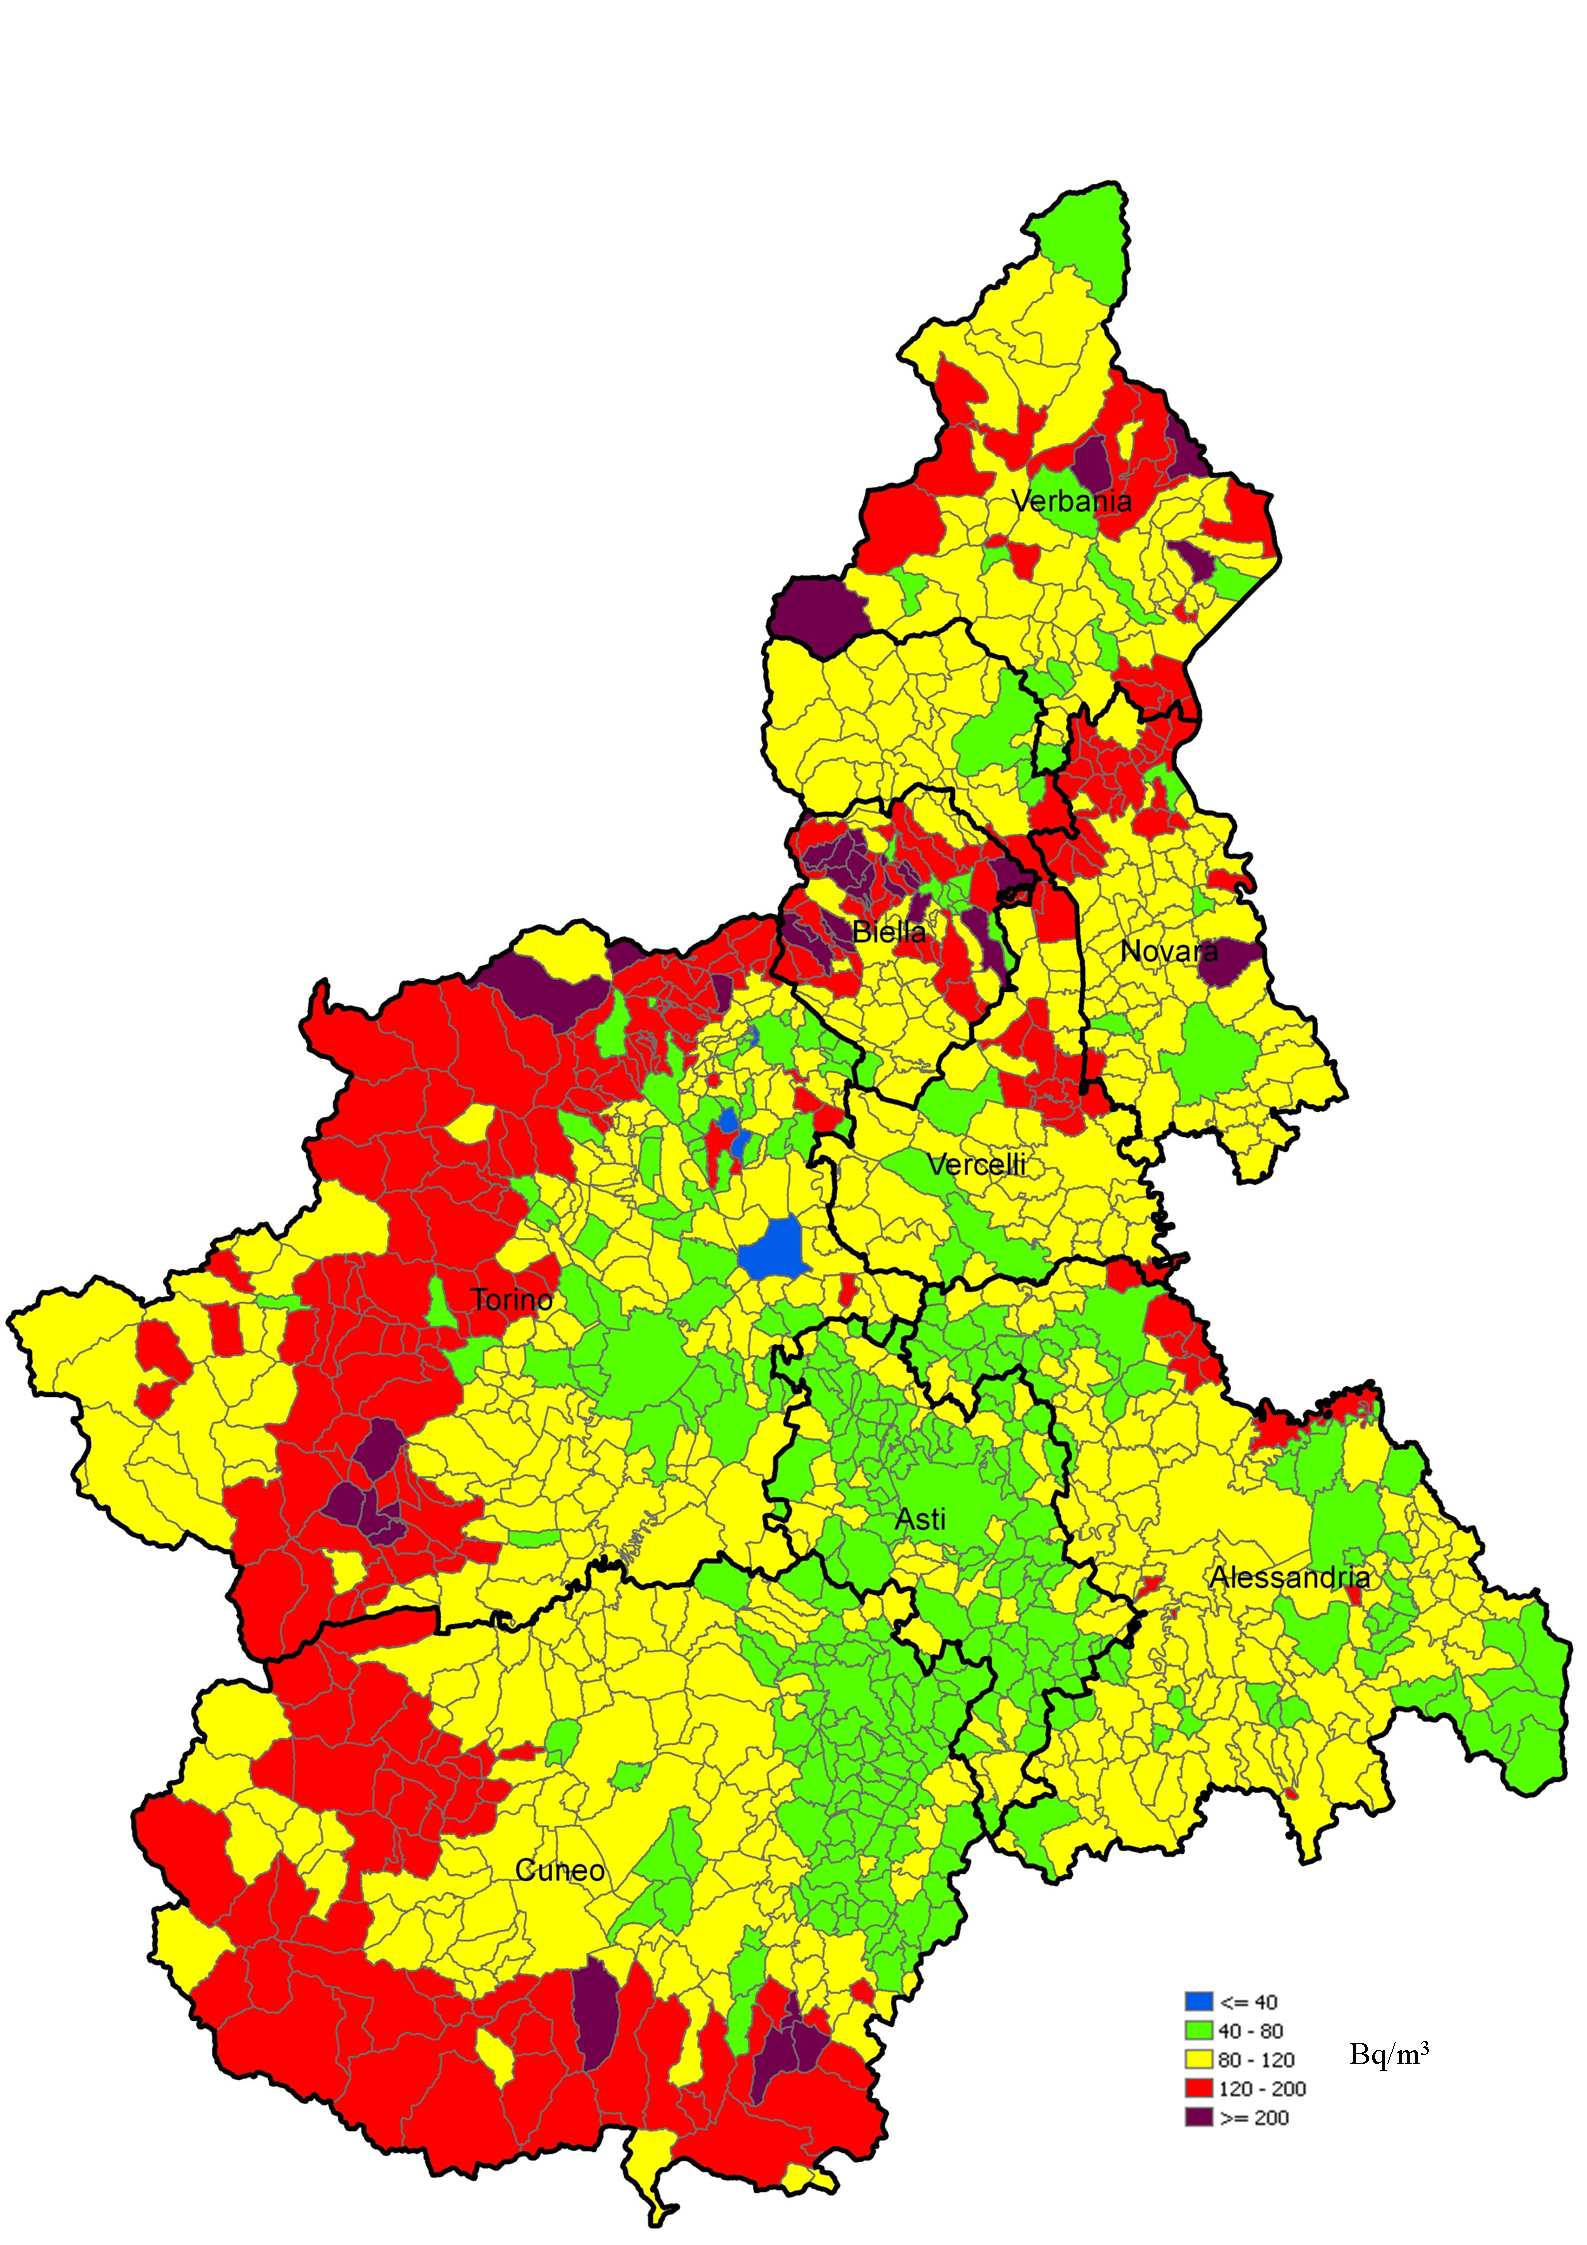 RISULTATI indicatore media comunale Distribuzione radon Piemonte 0,0 0,0 0,0 0,0 0,0 0,0 0,0 0,0 0,00 0,00 0,00 0 00 00 300 400 500 Bq/m 3 distribuzione lognormale base dati radon